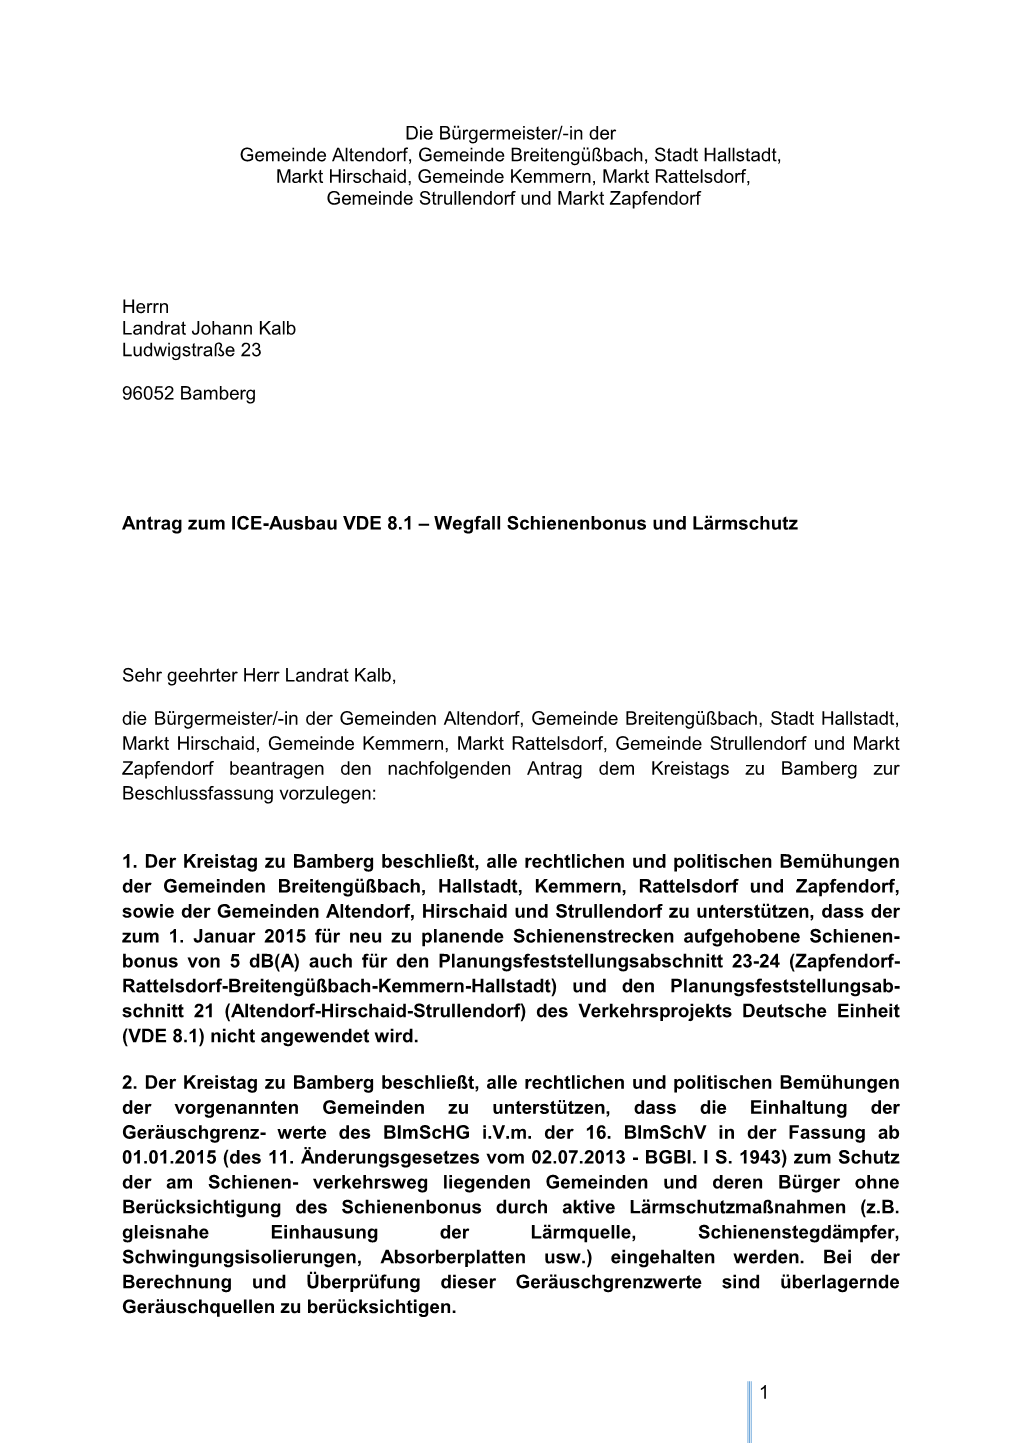 Antrag Zum ICE-Ausbau VDE 8.1 – Wegfall Schienenbonus Und Lärmschutz